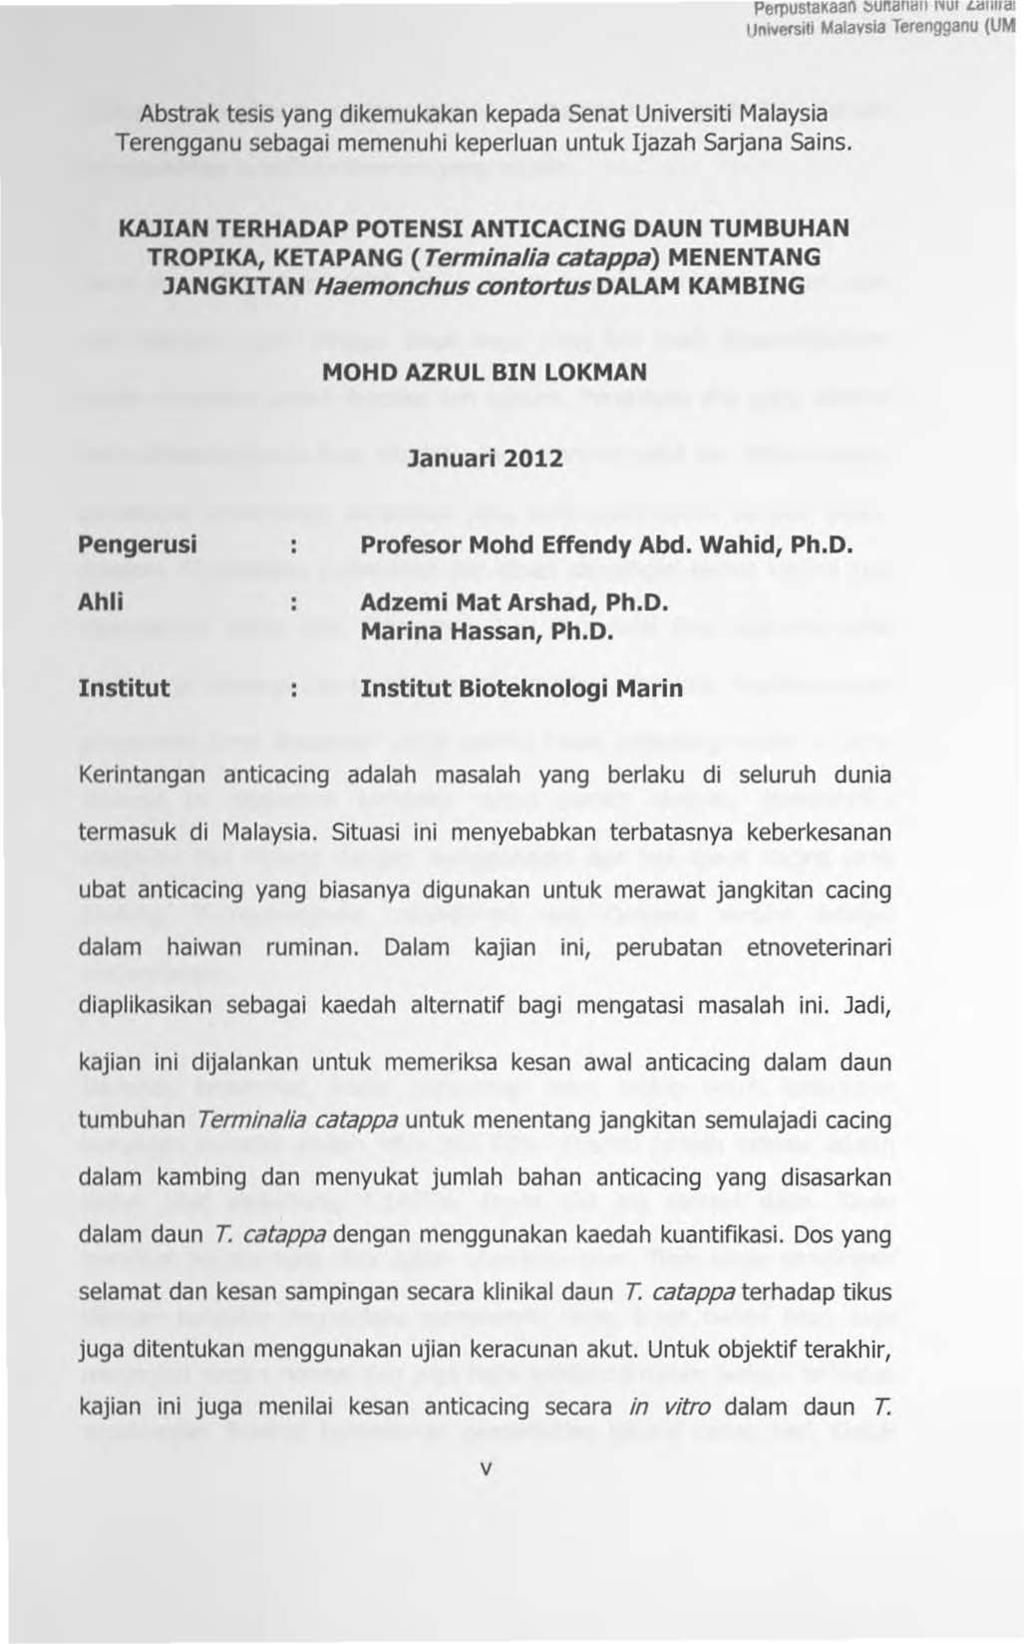 PerpustaKaao ~un:andu.,.~,~, Ldmrd. Universiti Malavsia Terengganu (UM Abstrak tesis yang dikemukakan kepada Senat Universiti Malaysia Terengganu sebagai memenuhi keperluan untuk Ijazah Sarjana Sains.